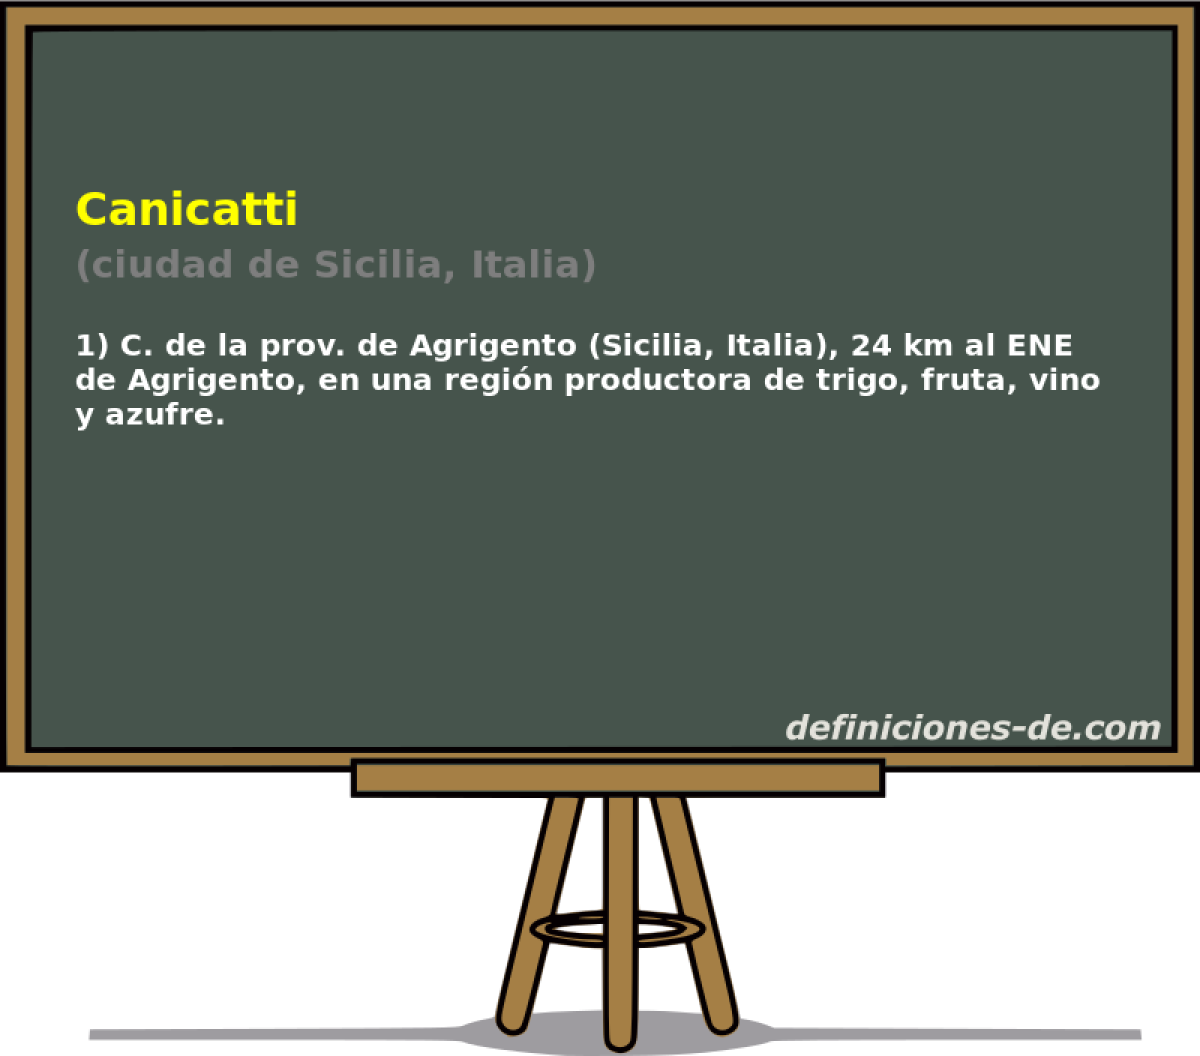 Canicatti (ciudad de Sicilia, Italia)